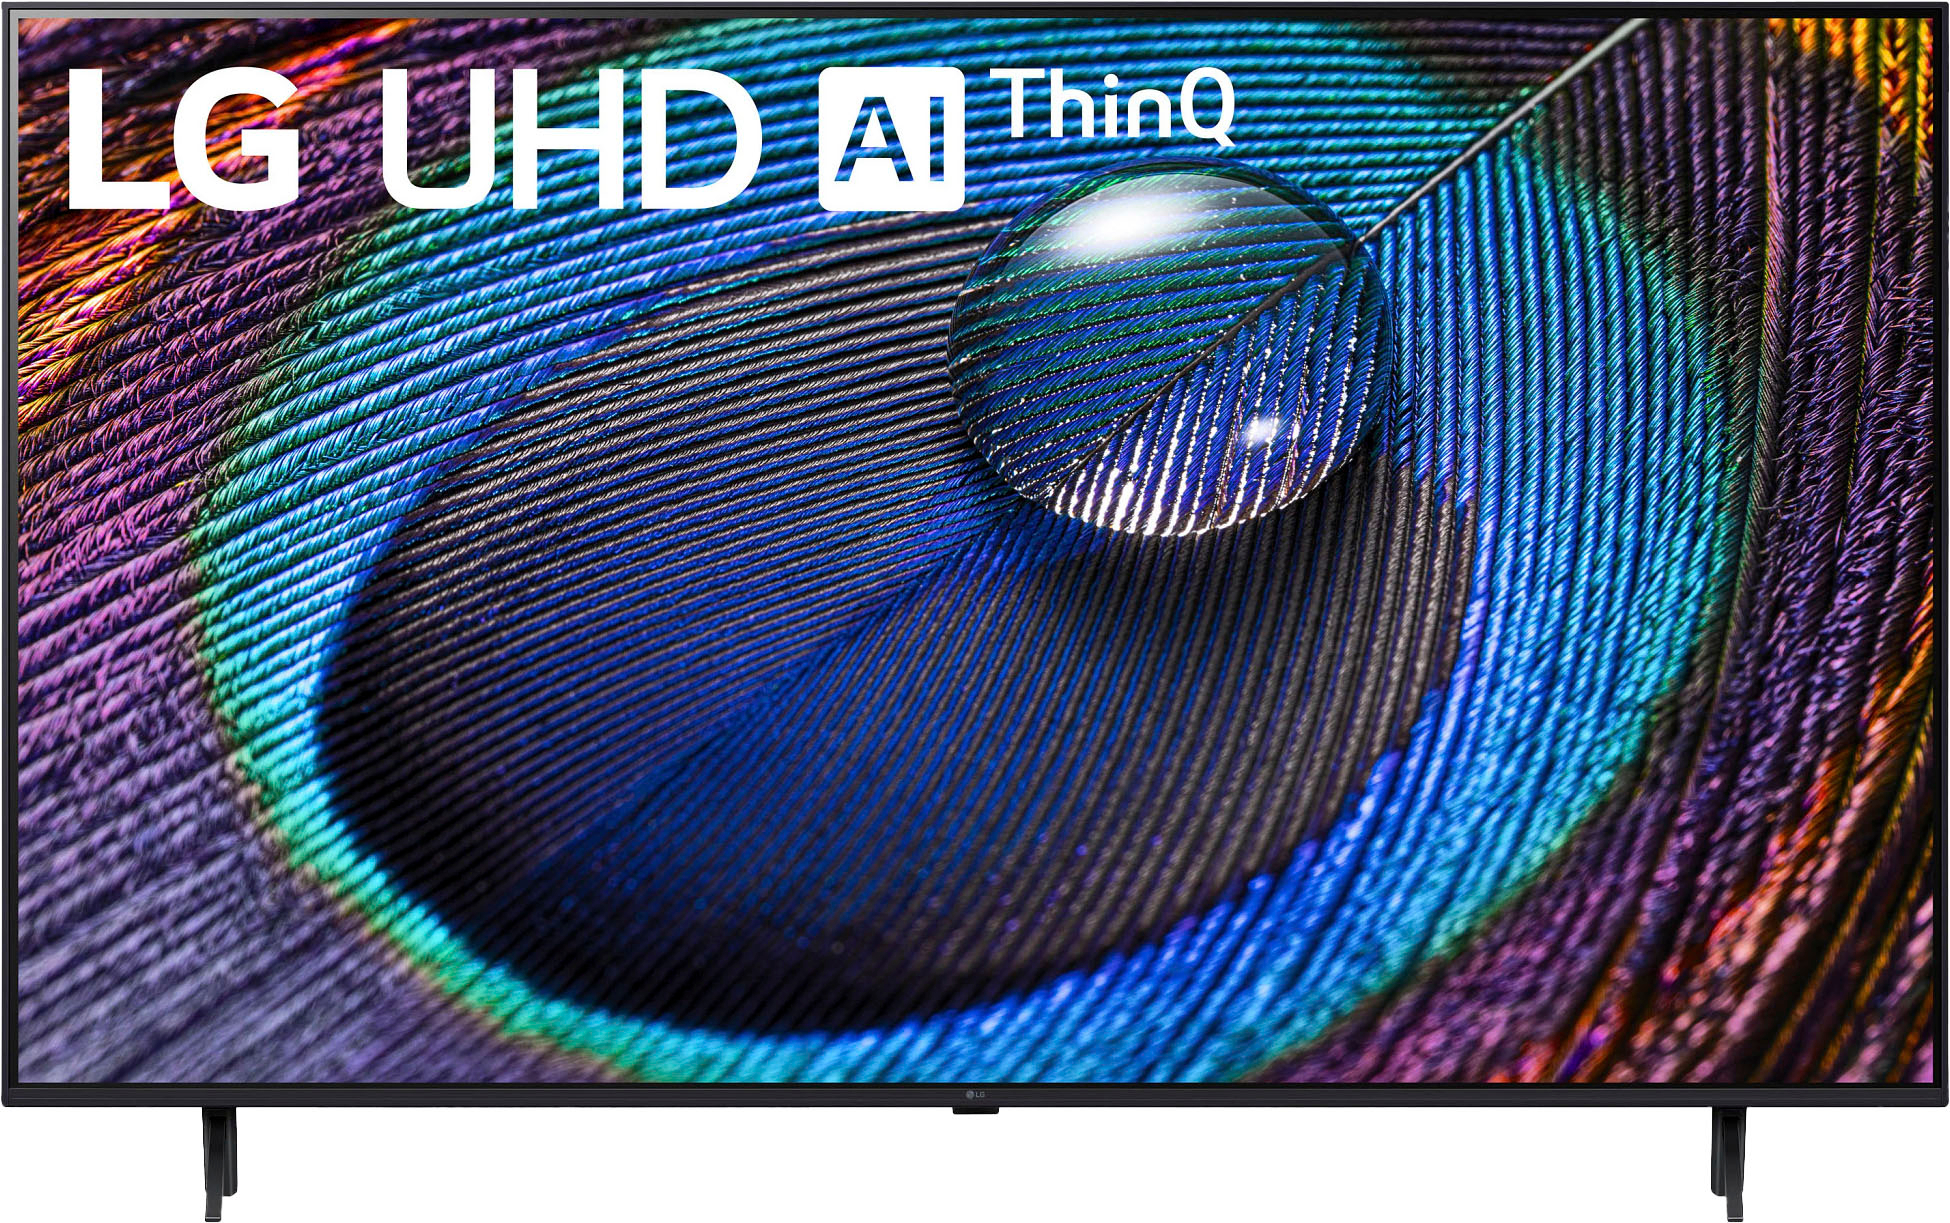 TV LG 65 Pulgadas 164 cm 65UR9050PSJ 4K-UHD LED Smart TV